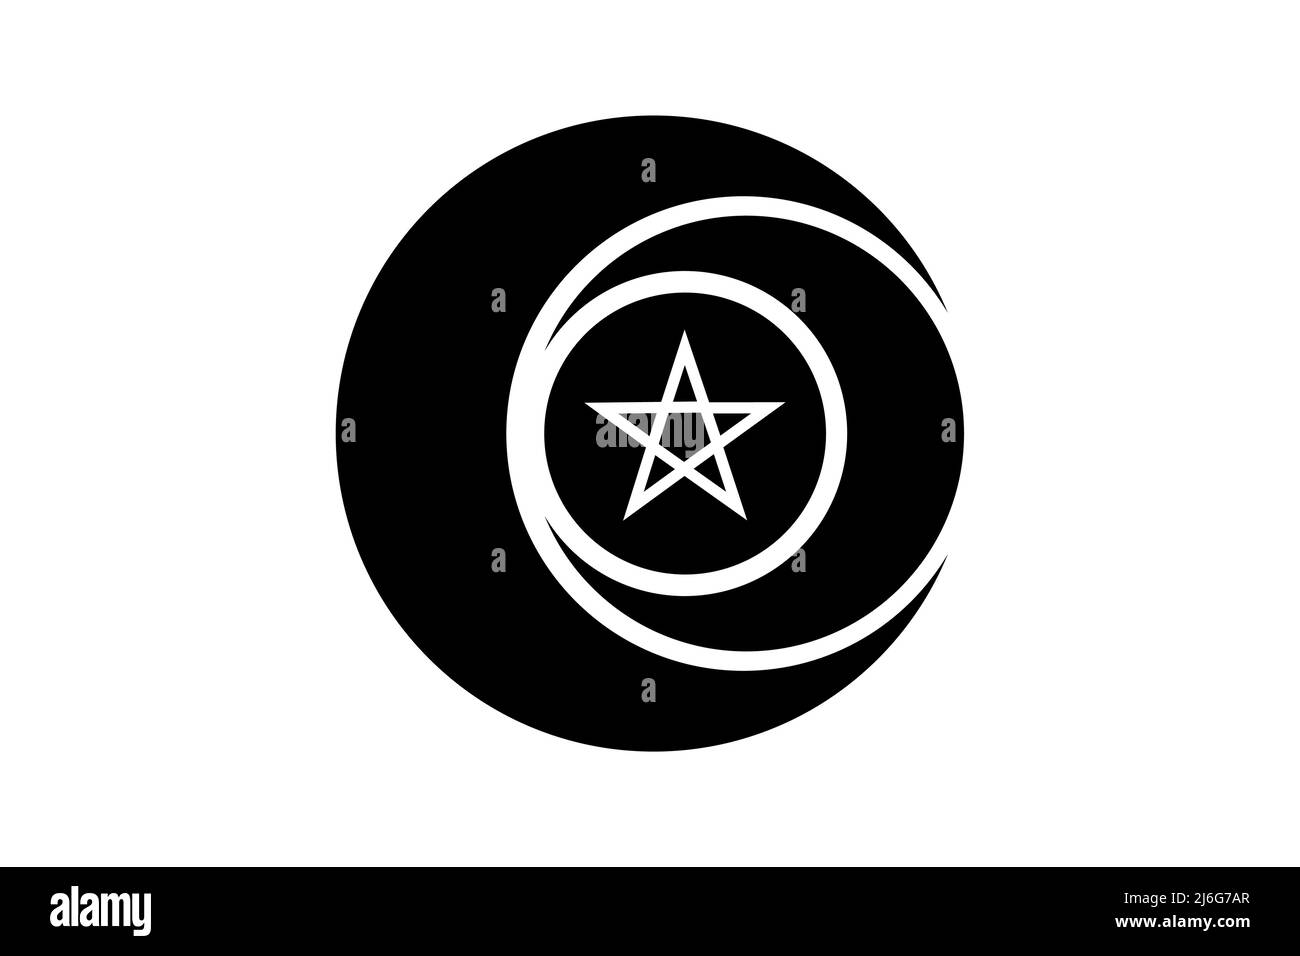 Simbolo triplice della dea Wiccan e cerchio del Pentacolo. Segno religioso della Luna tripla. Logo Wicca neopaganismo icona tatuaggio. La Terra, e il parto. Mezzaluna Illustrazione Vettoriale